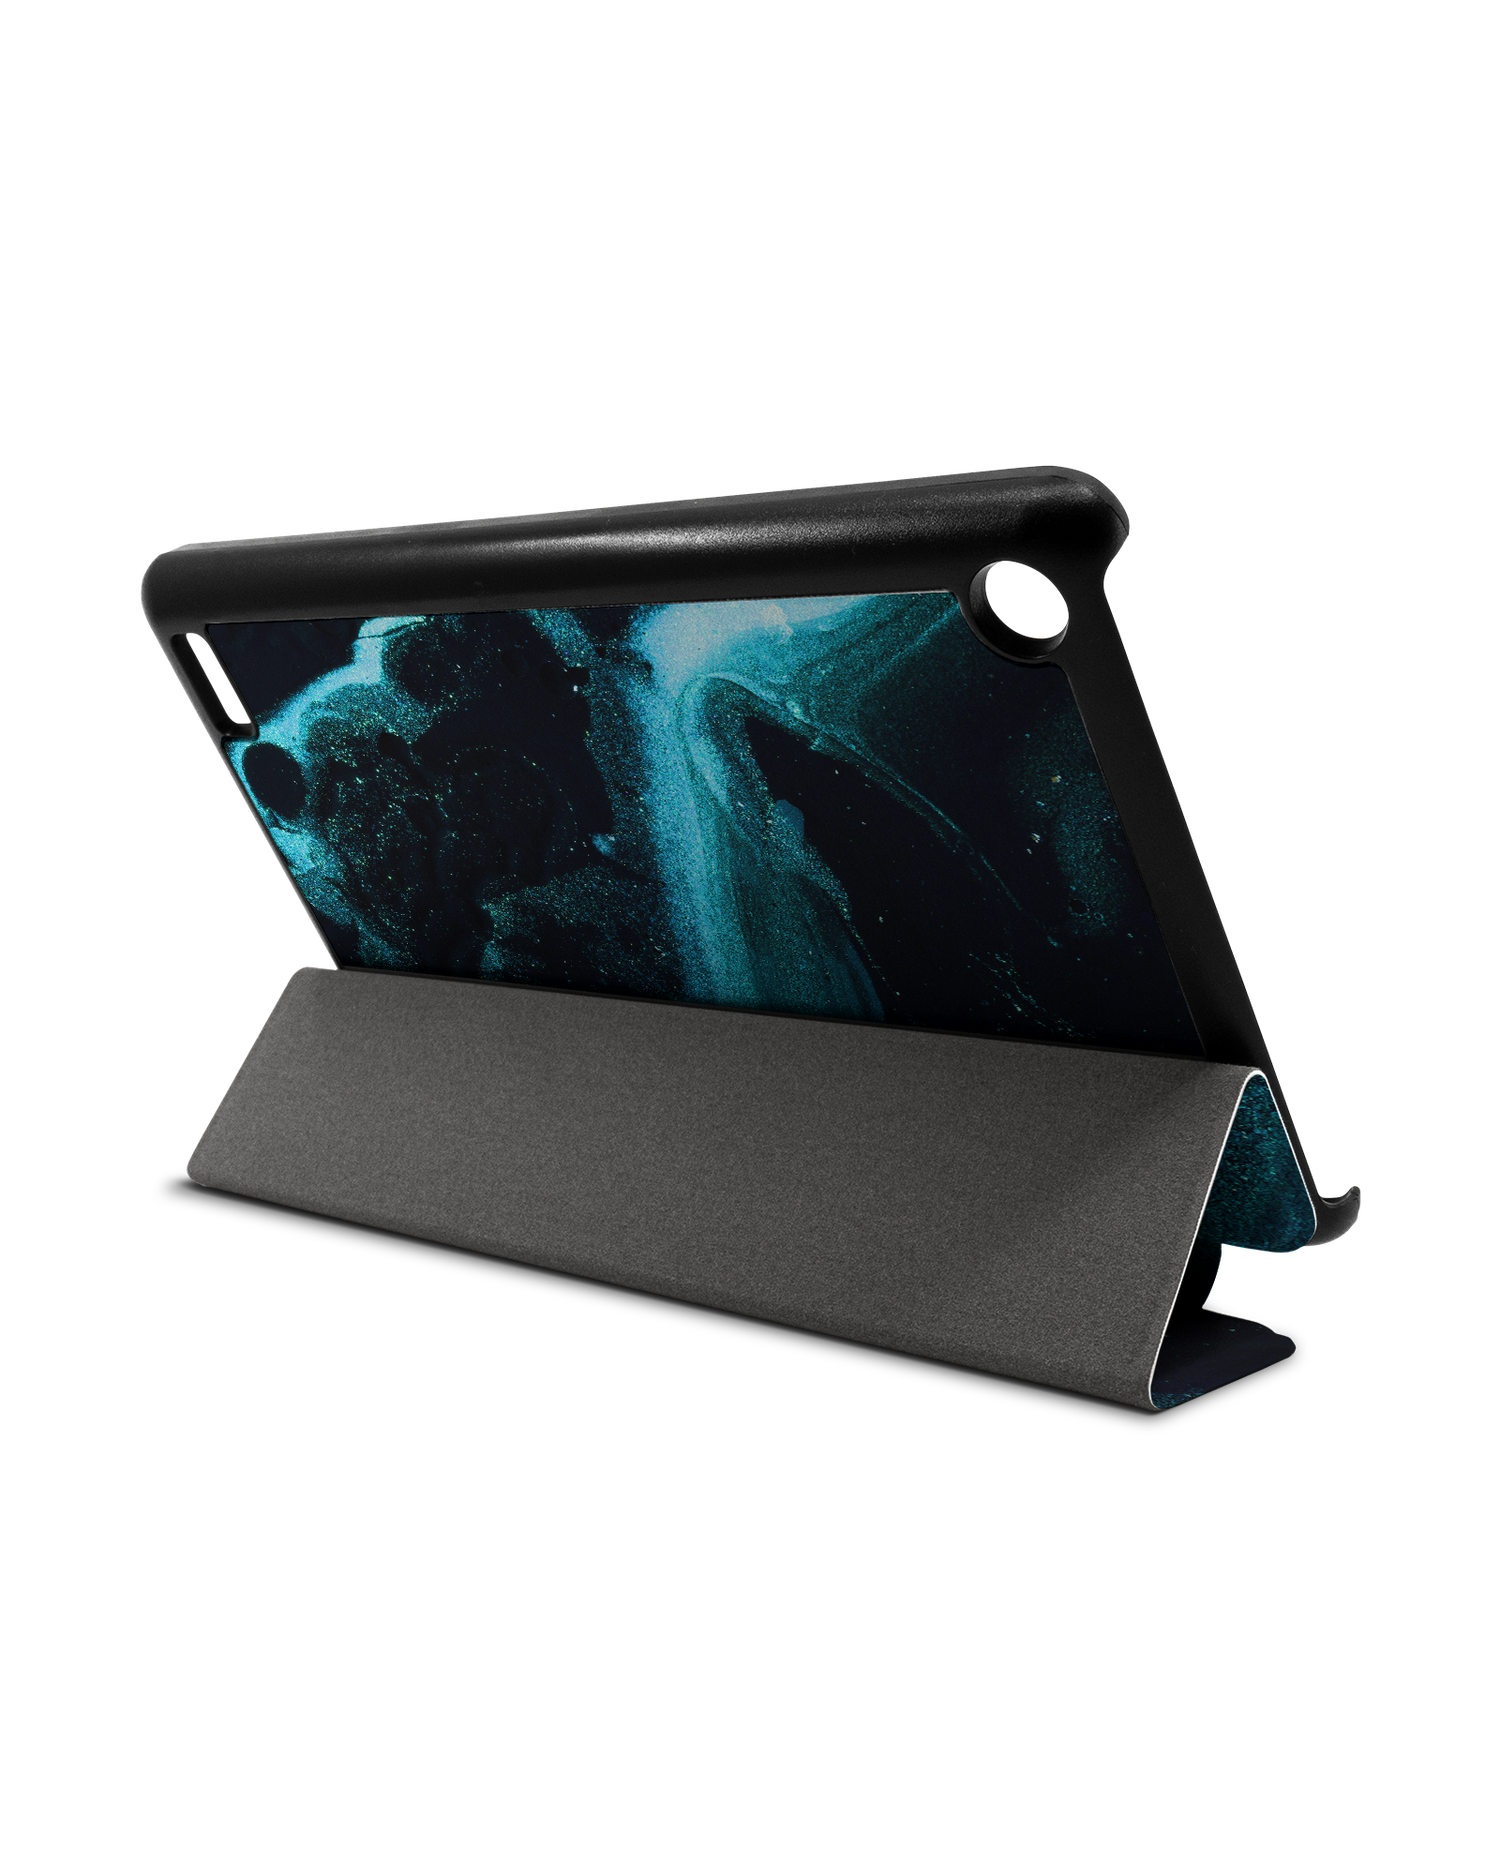 Deep Turquoise Sparkle Tablet Smart Case für Amazon Fire 7: Aufgestellt im Querformat